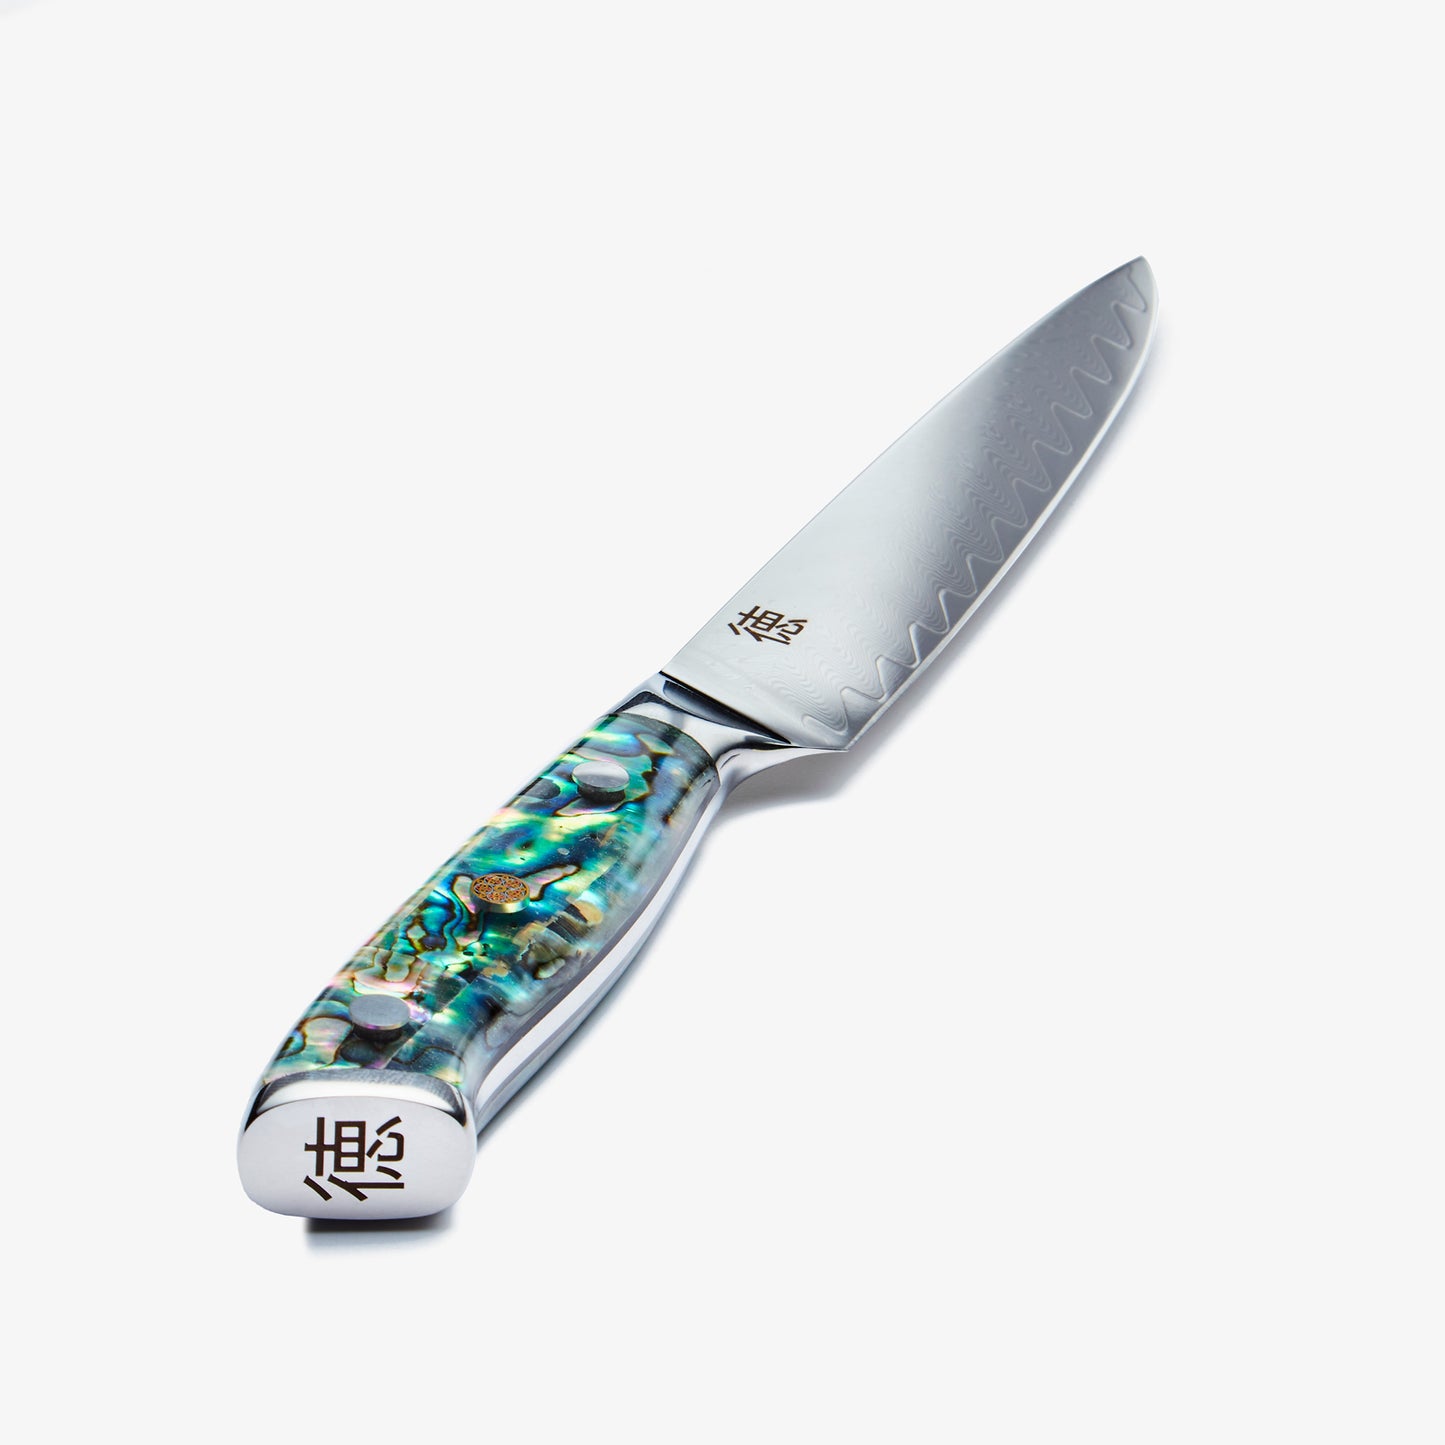 شيكاشي (ちかし) سكين متعدد الاستخدامات مقاس 5 بوصات